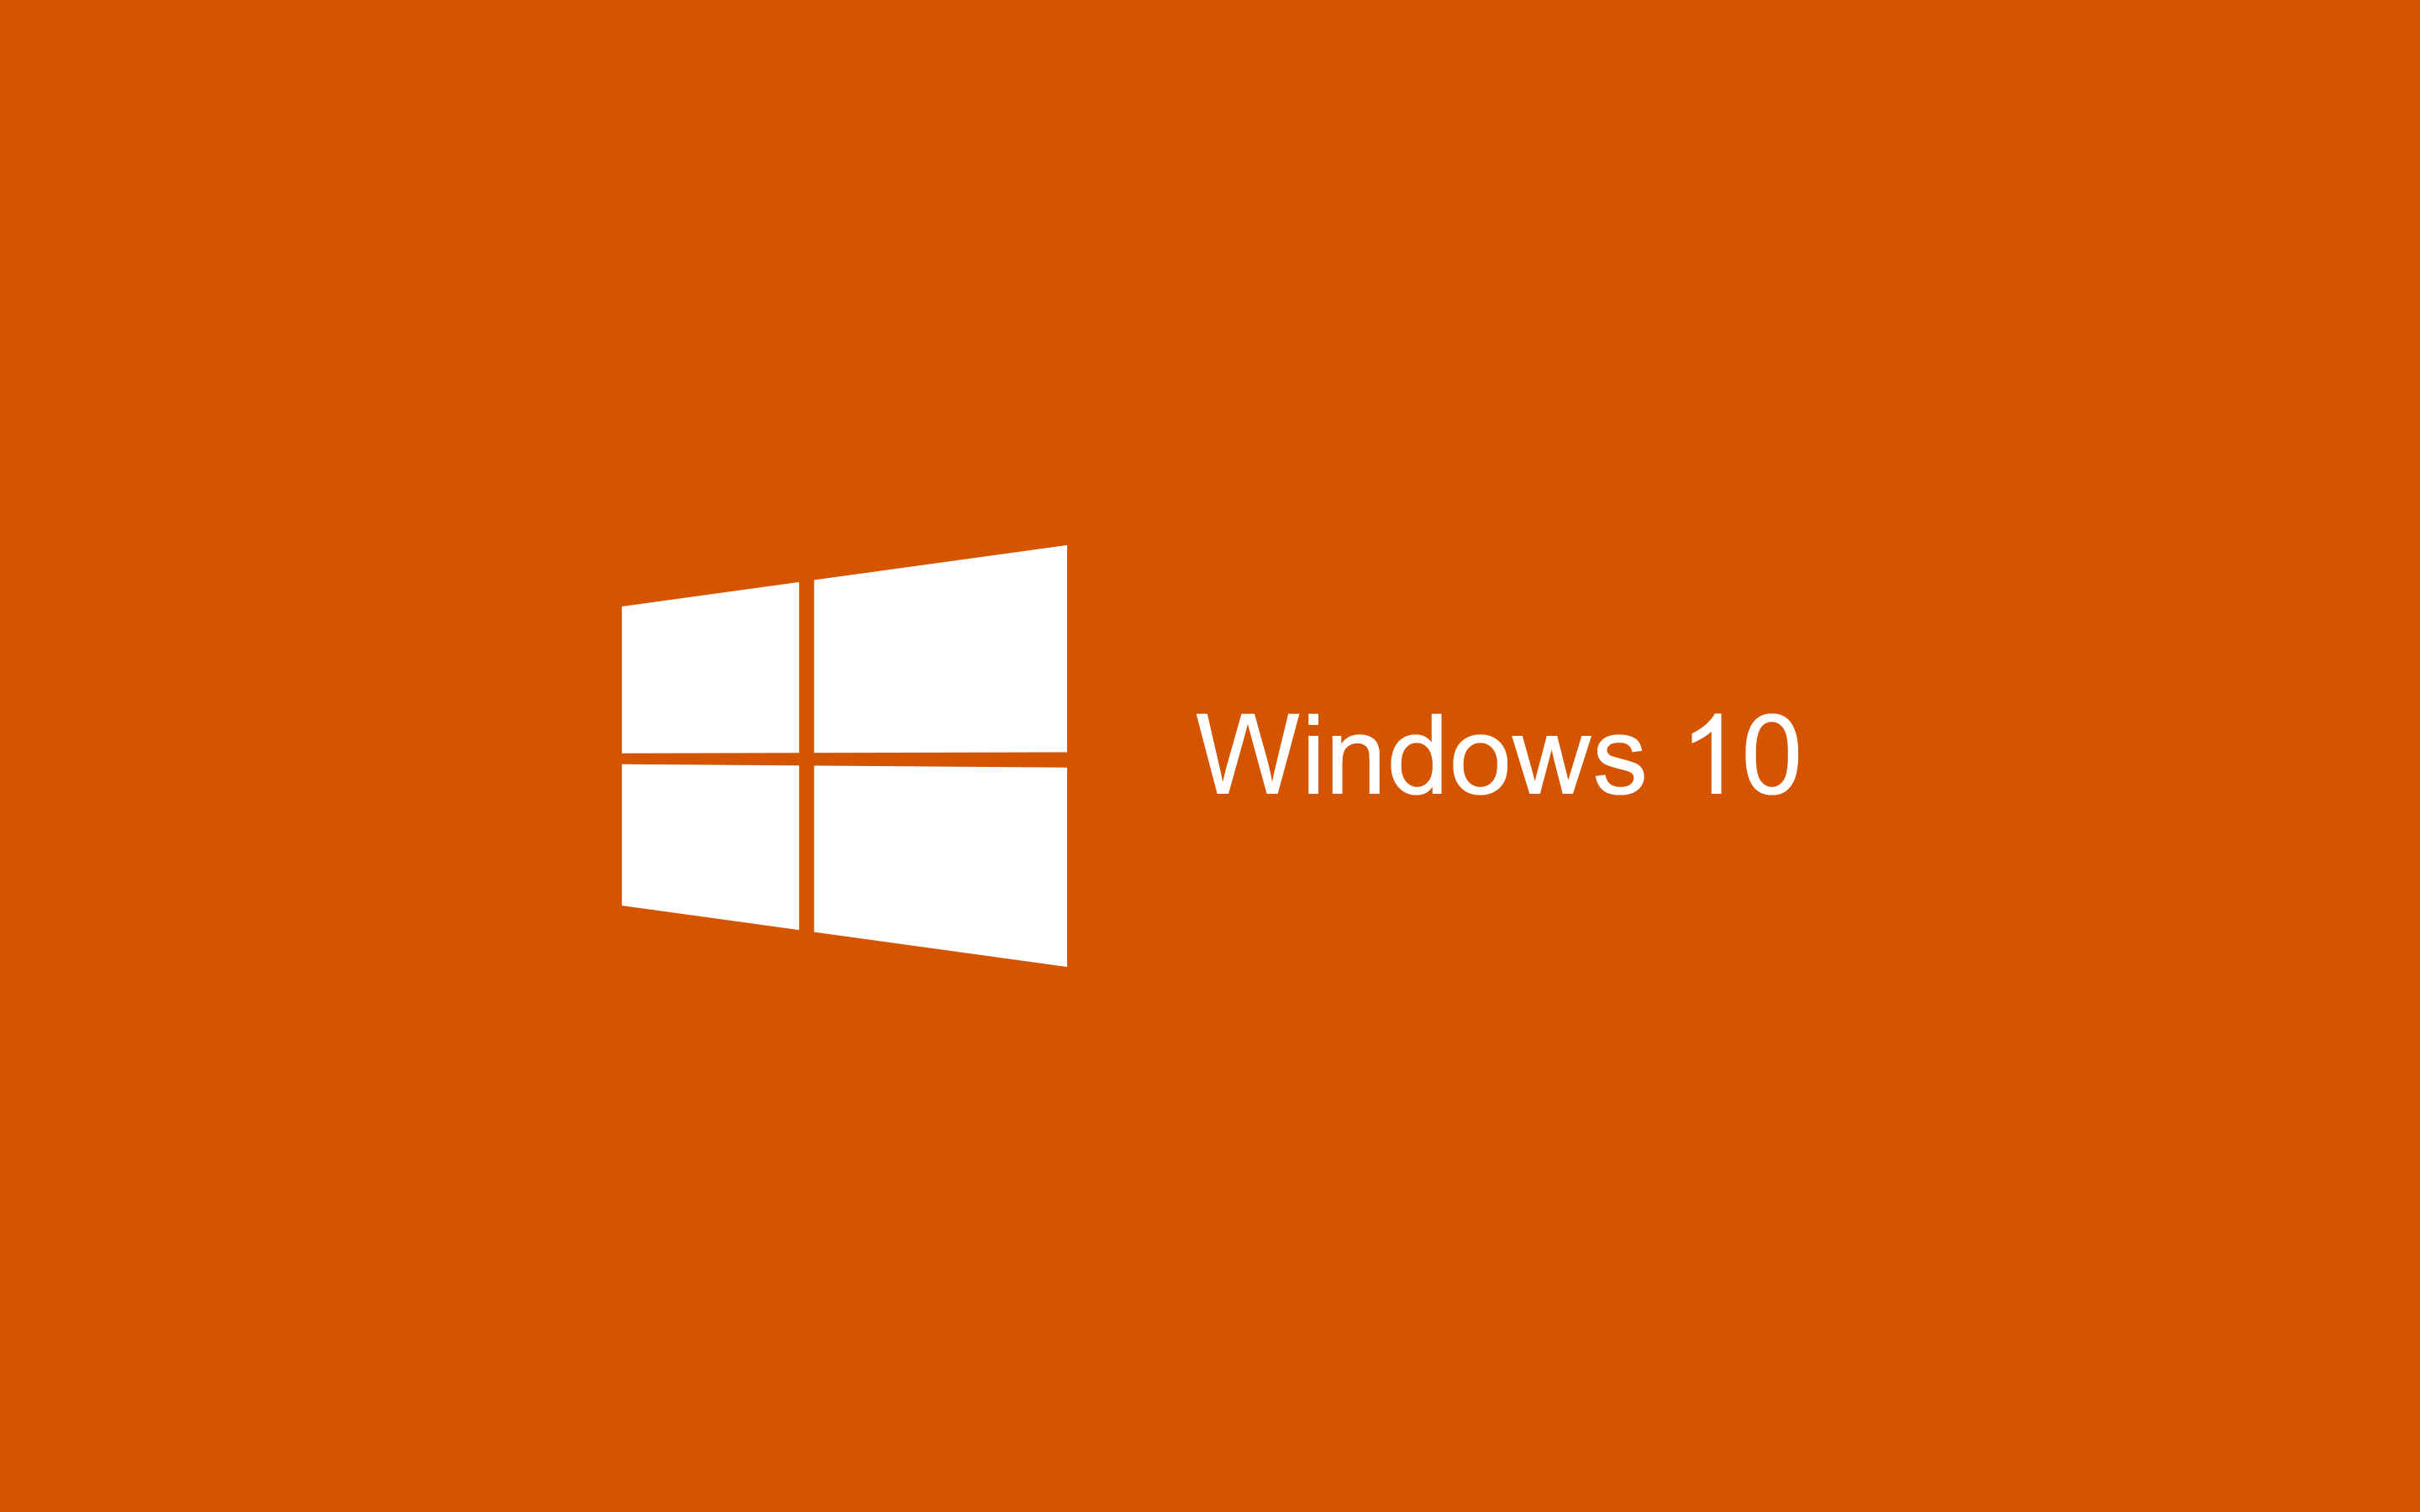 Hình nền Windows 10 màu cam từ Wallpaper Cave: Wallpaper Cave mang đến cho bạn những hình nền đẹp nhất trên màn hình của bạn. Tận hưởng hình nền màu cam sáng với Windows 10, tạo ra sự khác biệt và sống động cho màn hình của bạn. Khám phá ngay hôm nay và trang trí màn hình của bạn với hình ảnh đáng yêu này.